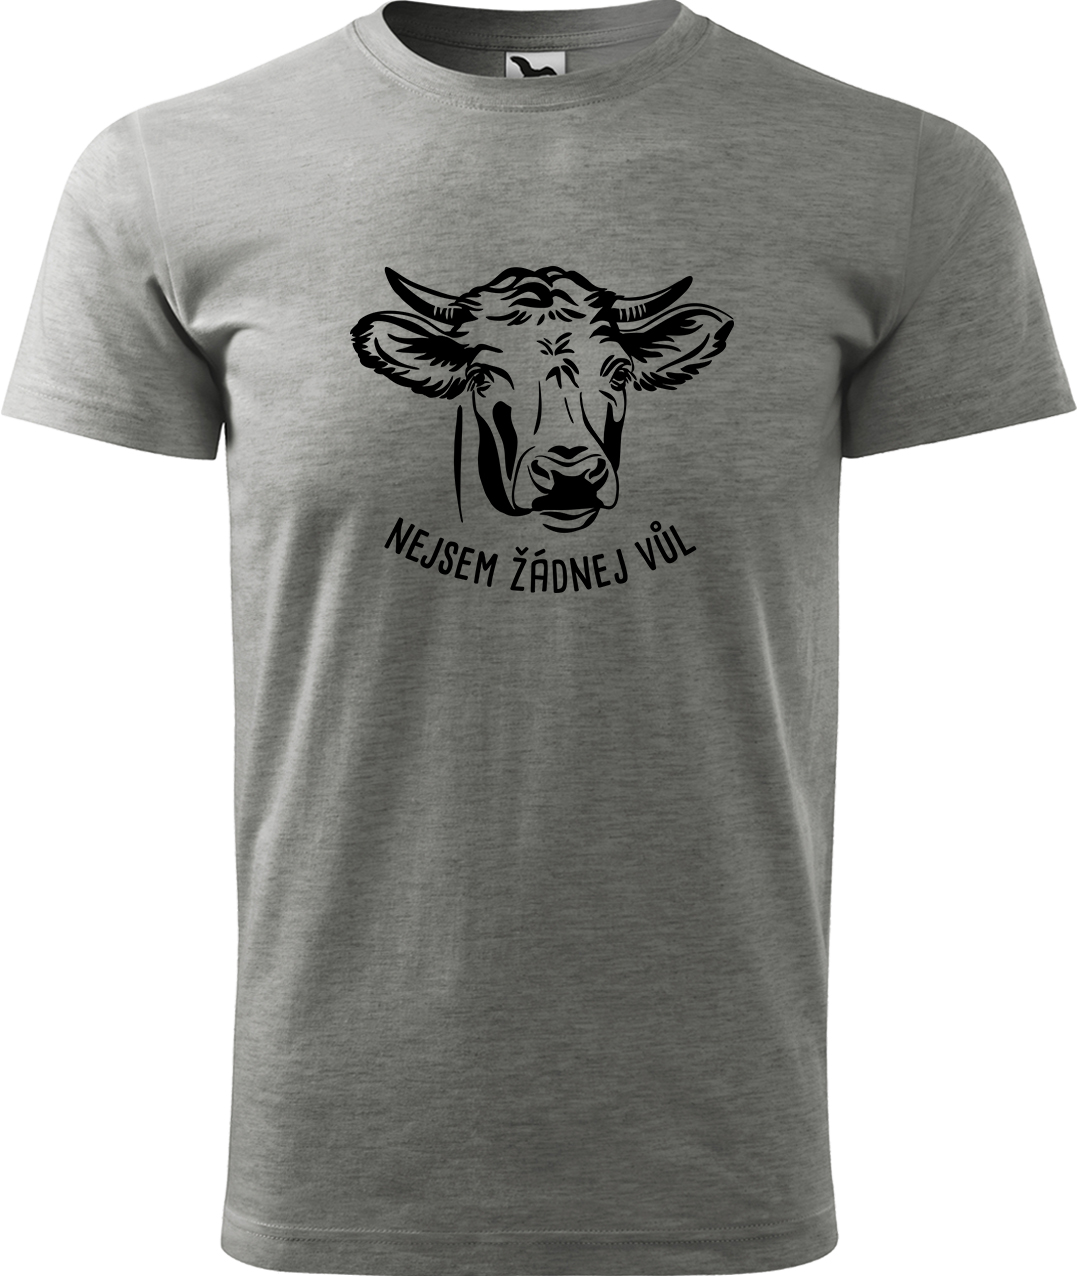 Pánské tričko s krávou - Nejsem žádnej vůl Velikost: L, Barva: Tmavě šedý melír (12)